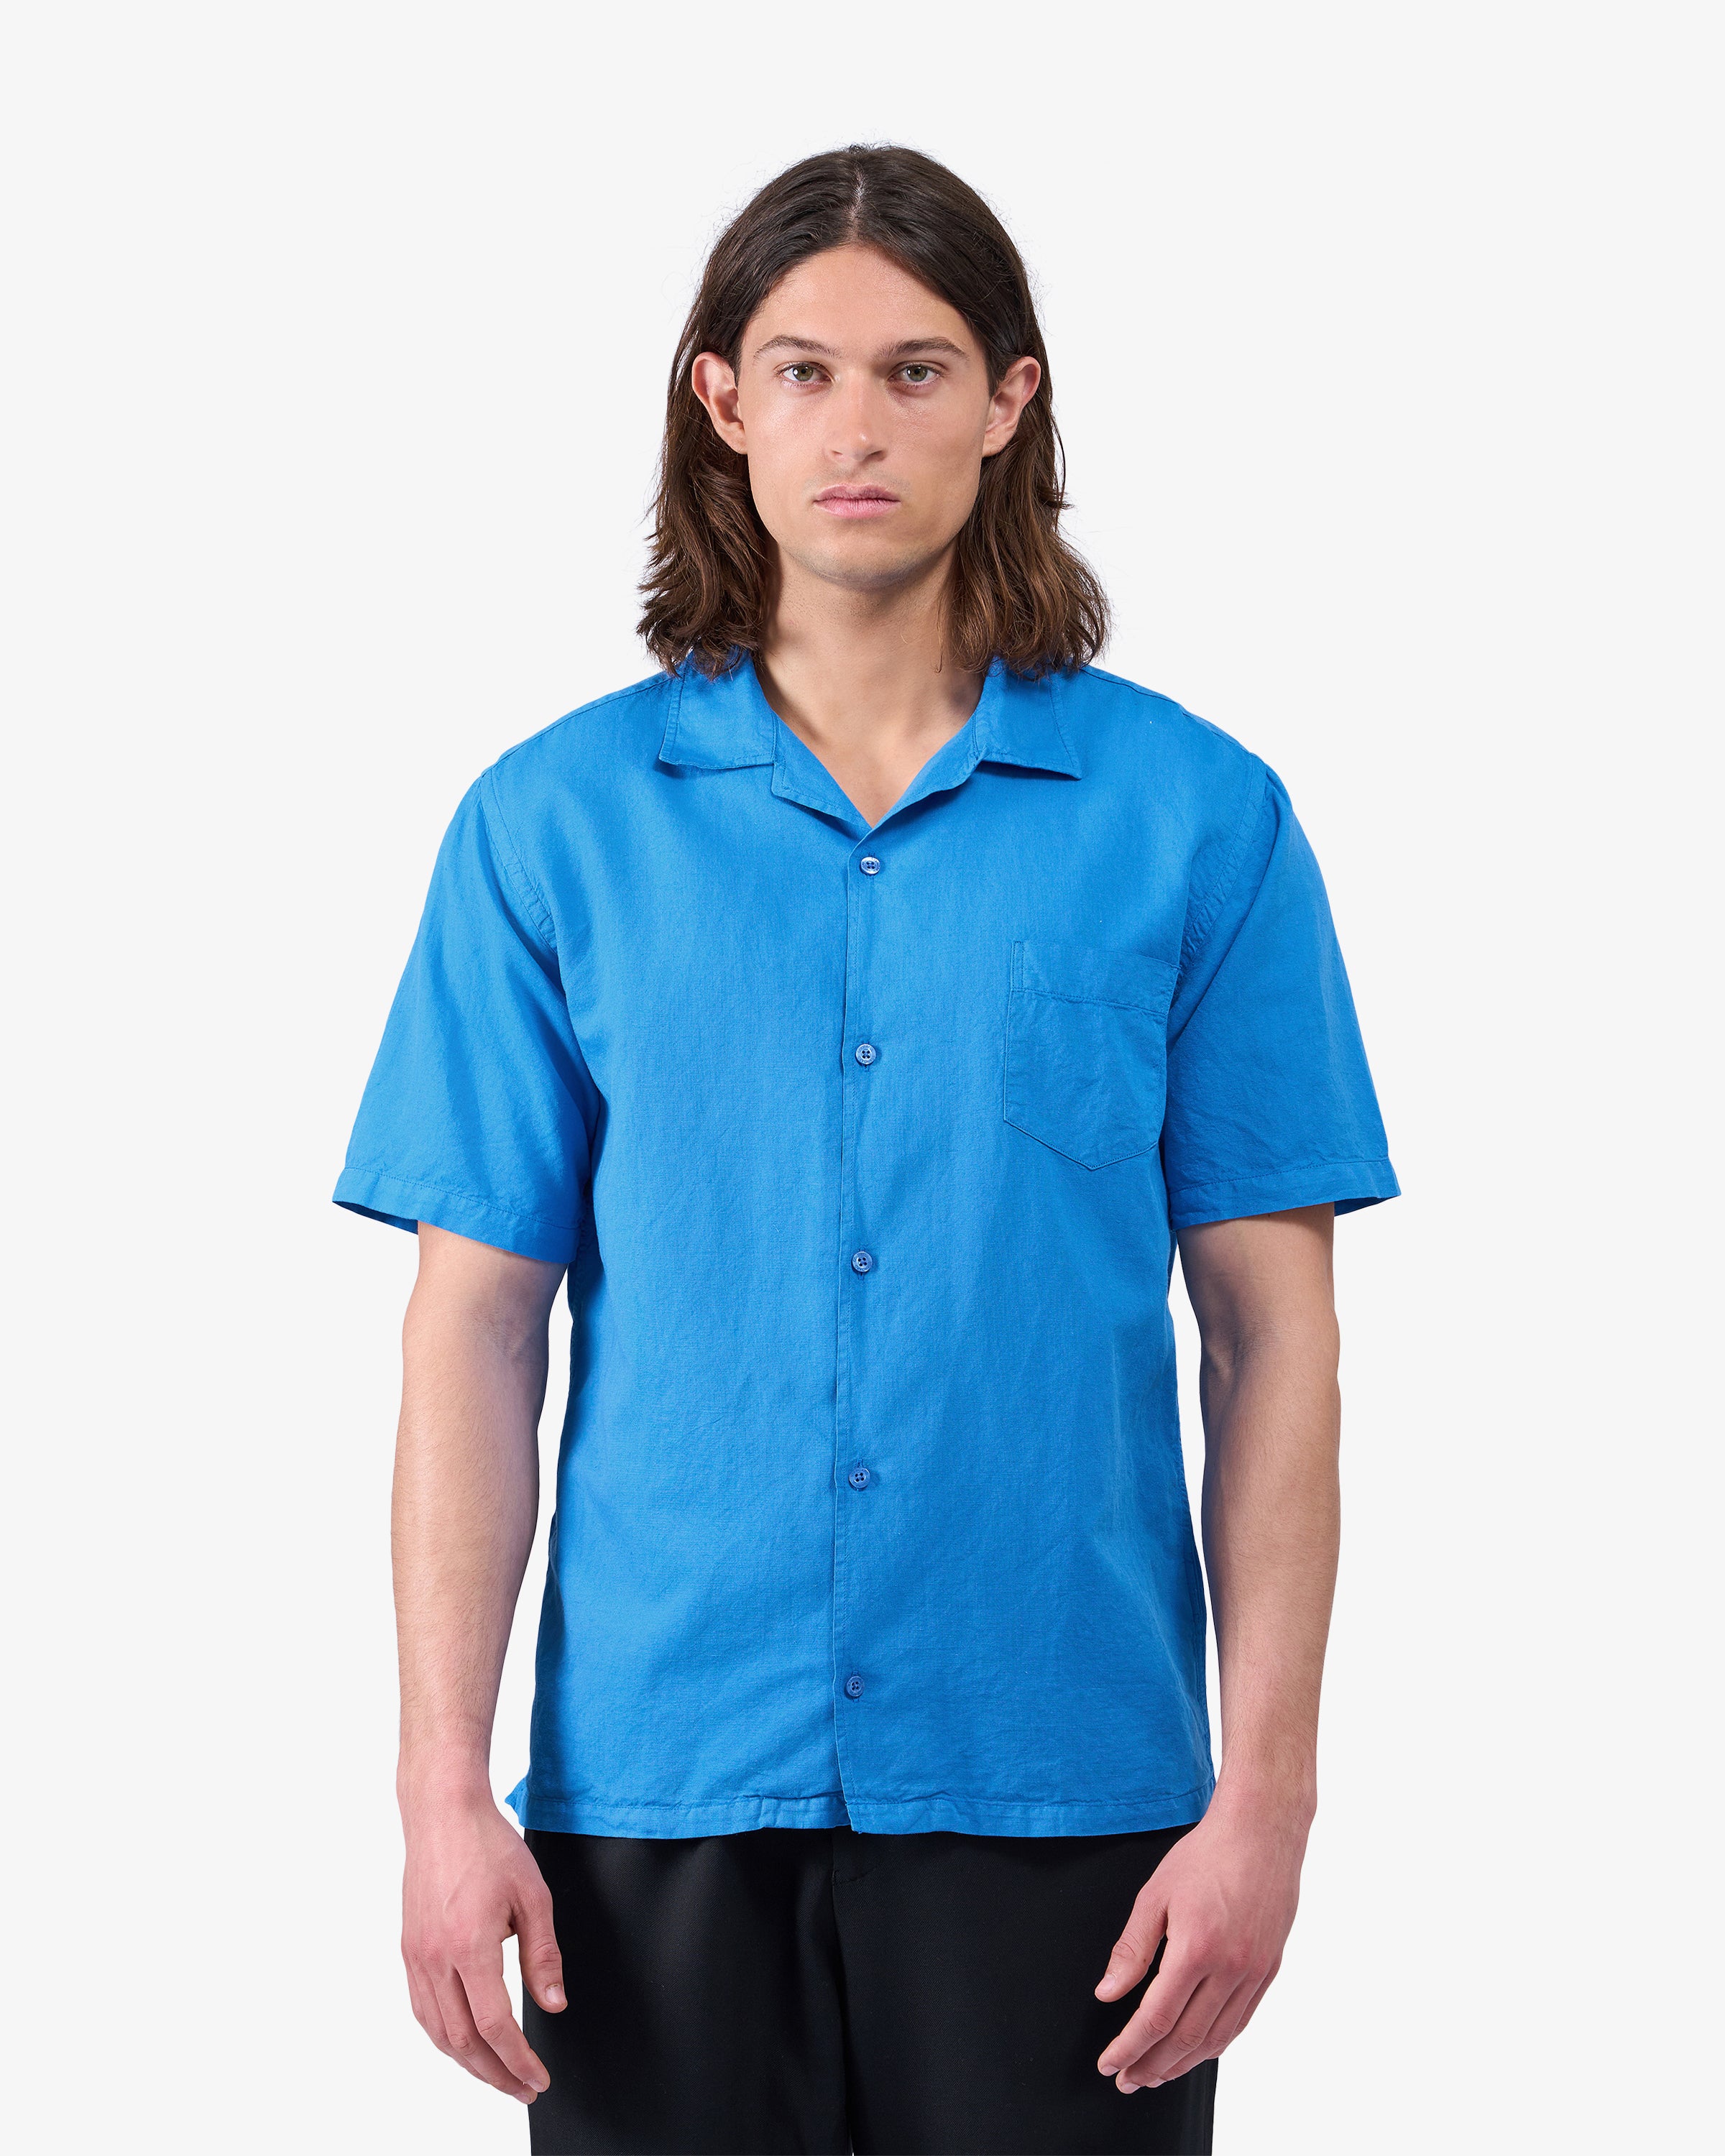 Linen Short Sleeved Shirt - Desert Khaki